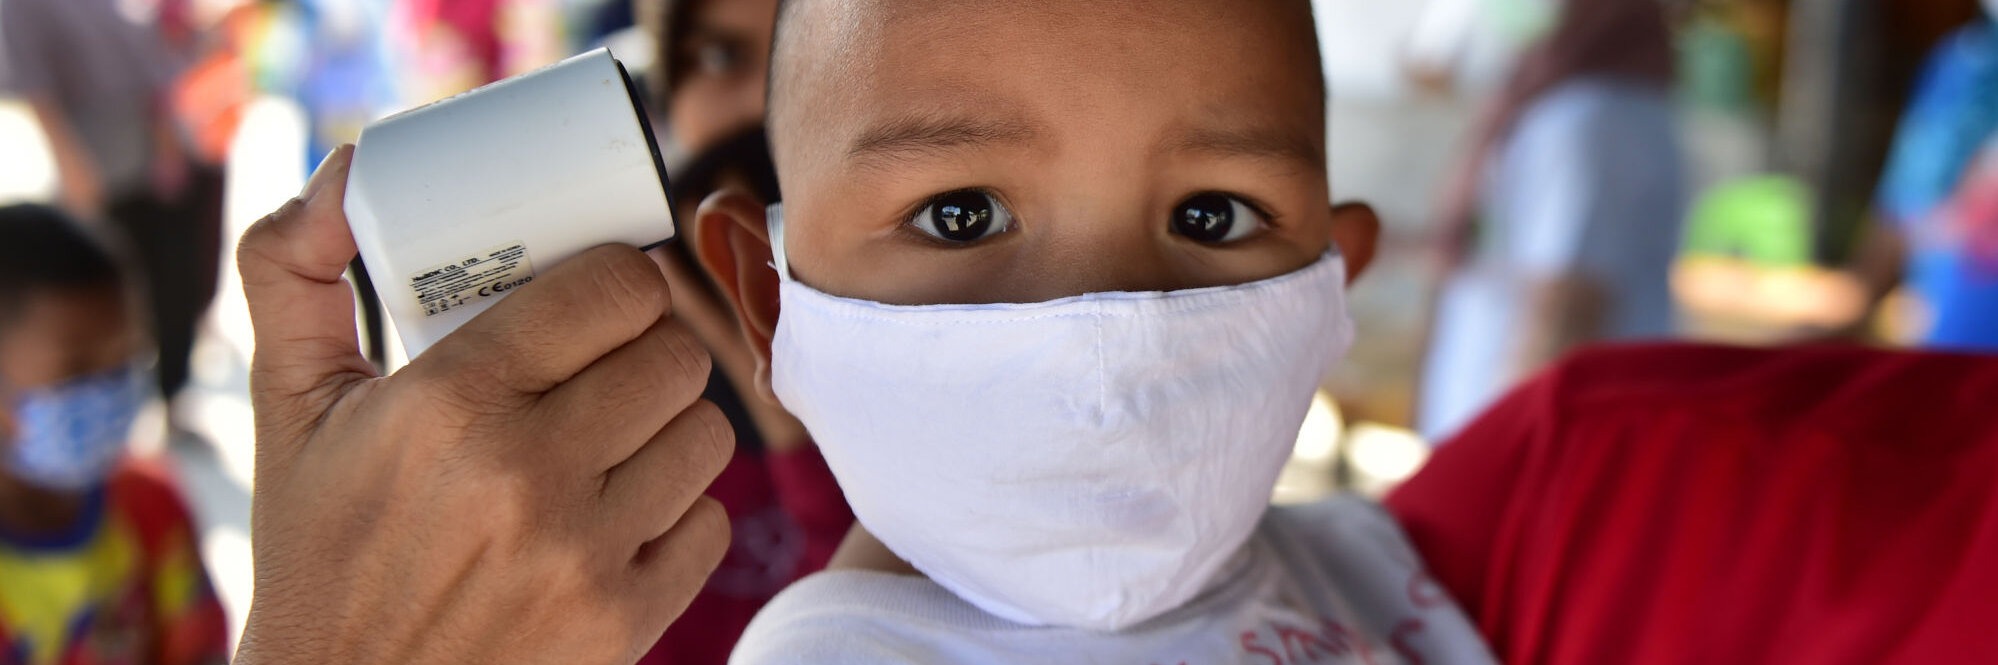 Bub in Thailand  trägt eine Maske gegen das Coronavirus, während Fieber gemessen wird. 